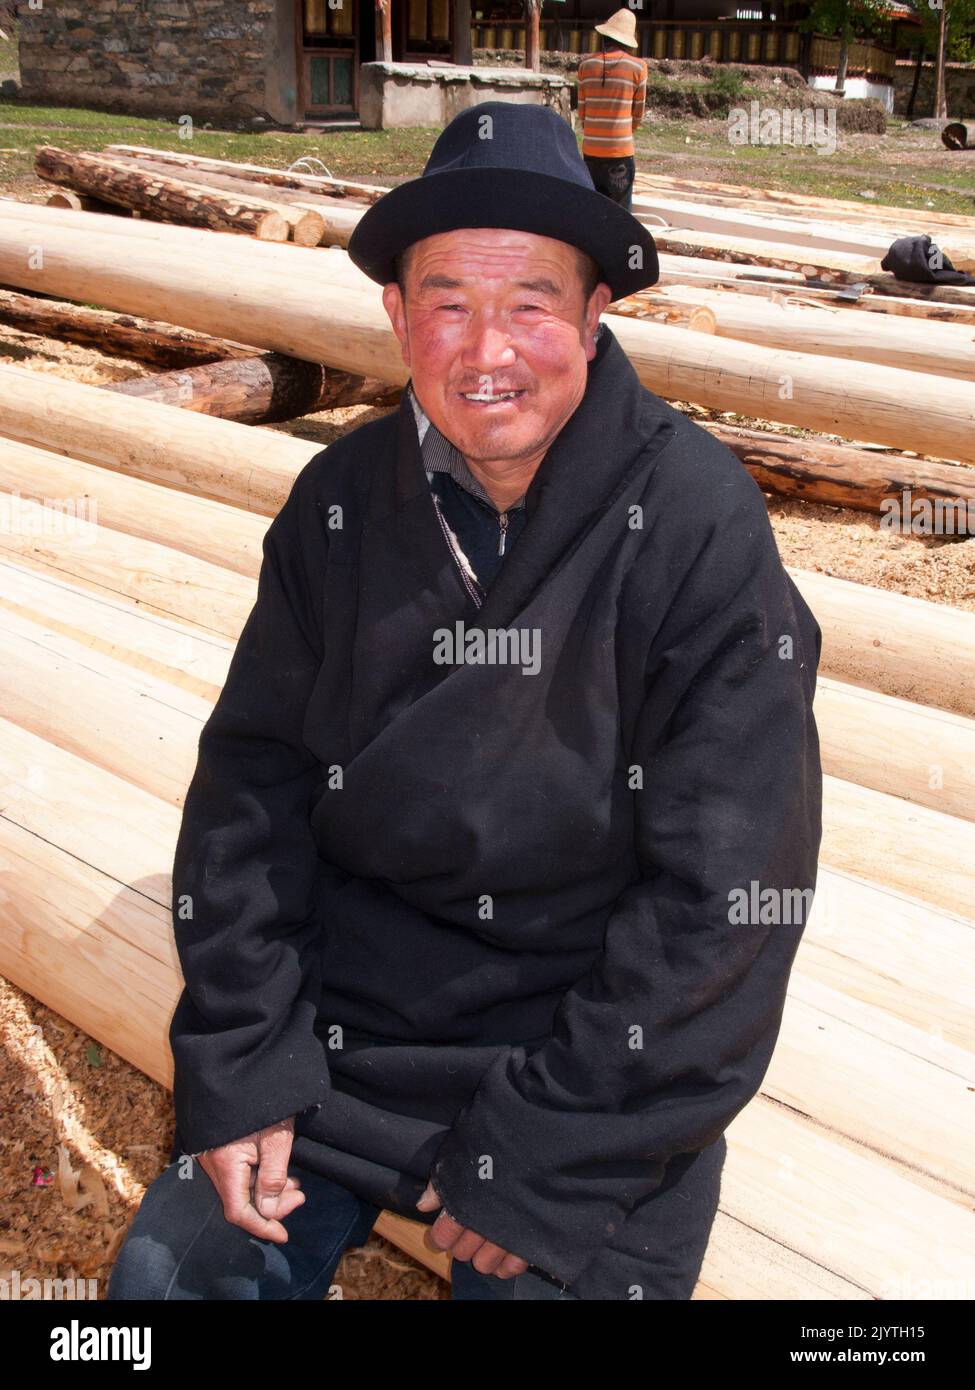 Ritratto dell'uomo locale, una persona del patrimonio tibetano ma che vive in Cina, residenti di un piccolo villaggio fuori Songpan antica città nella provincia settentrionale del Sichuan. PRC. Cina (126) Foto Stock